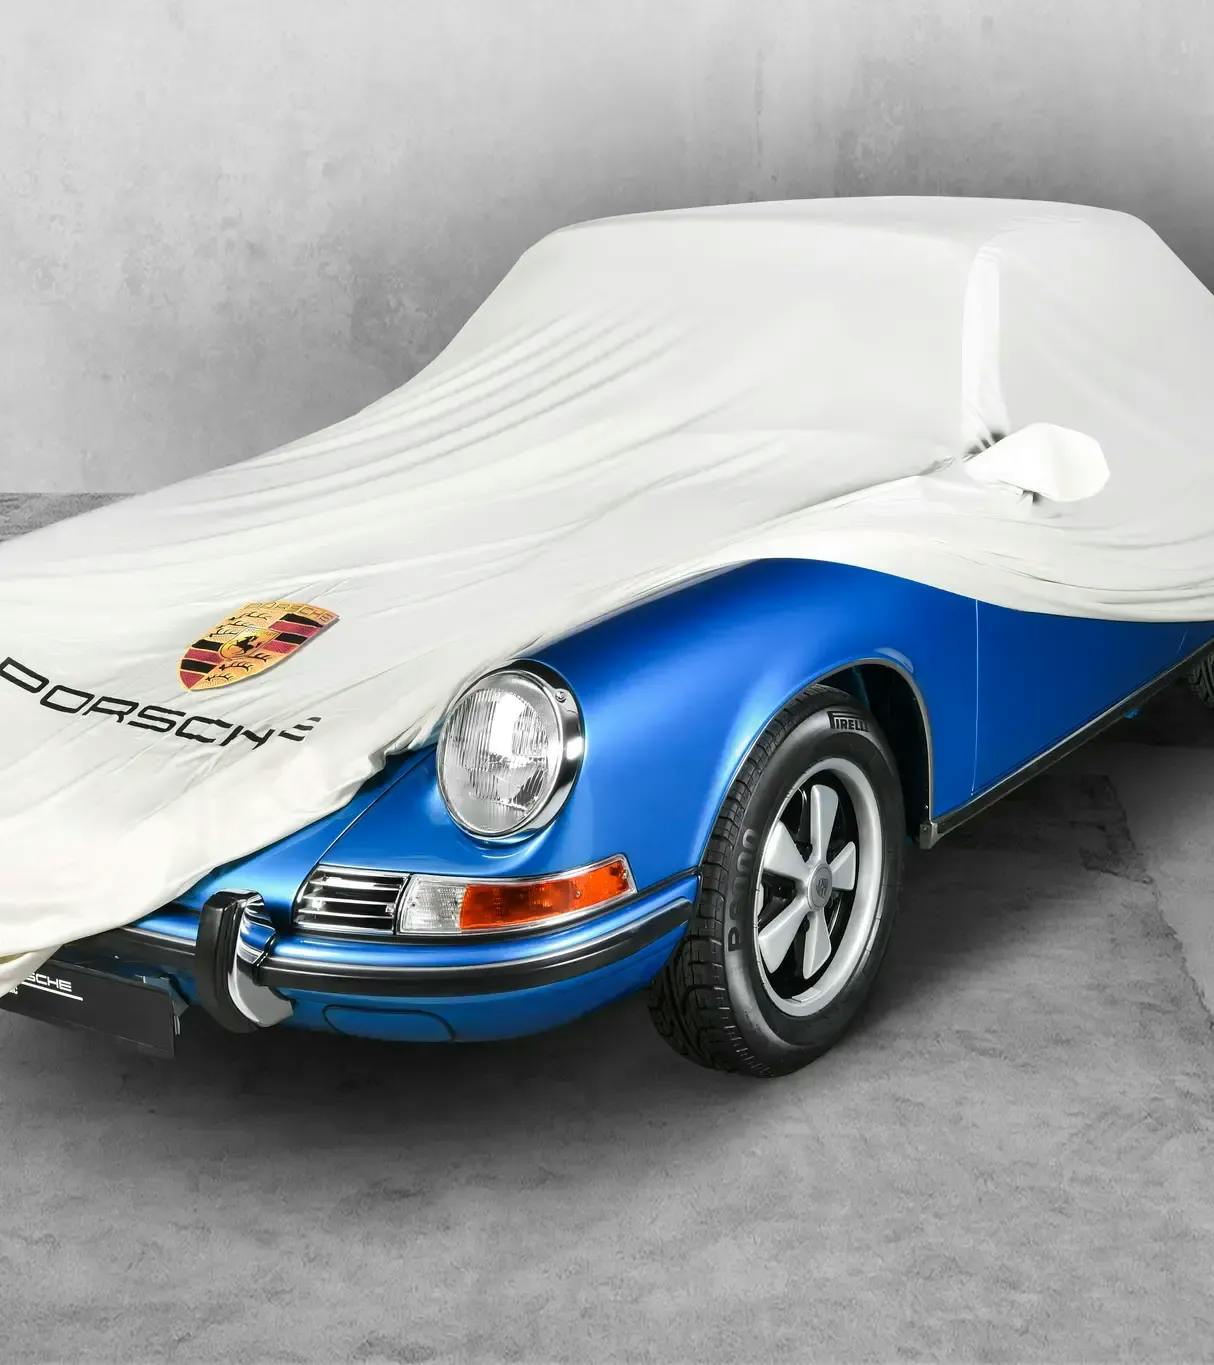 Funda protectora del vehículo sin spoiler y con retrovisor exterior izquierdo para Porsche 911, 912 y 964 2